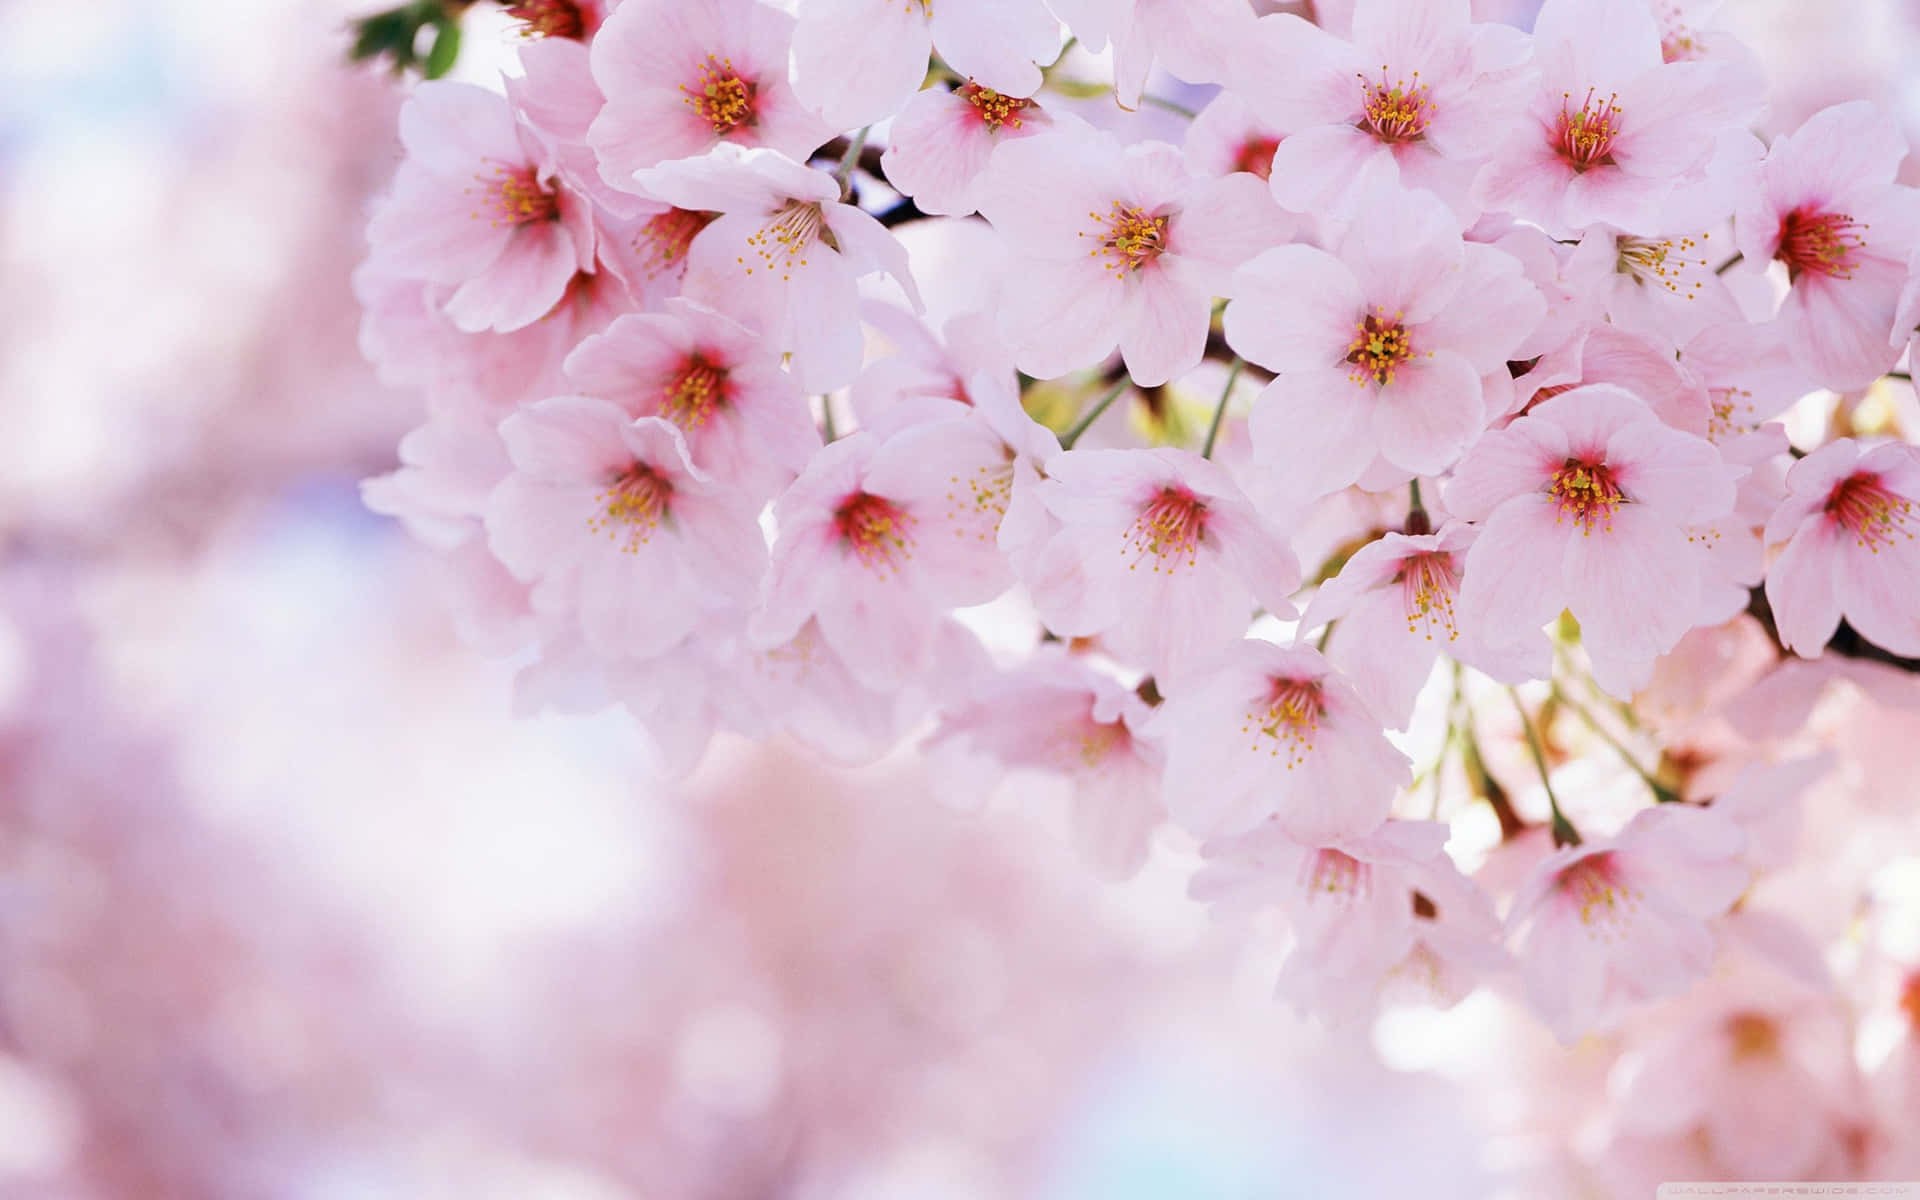 Enjoying a beautiful day of sakura blooms